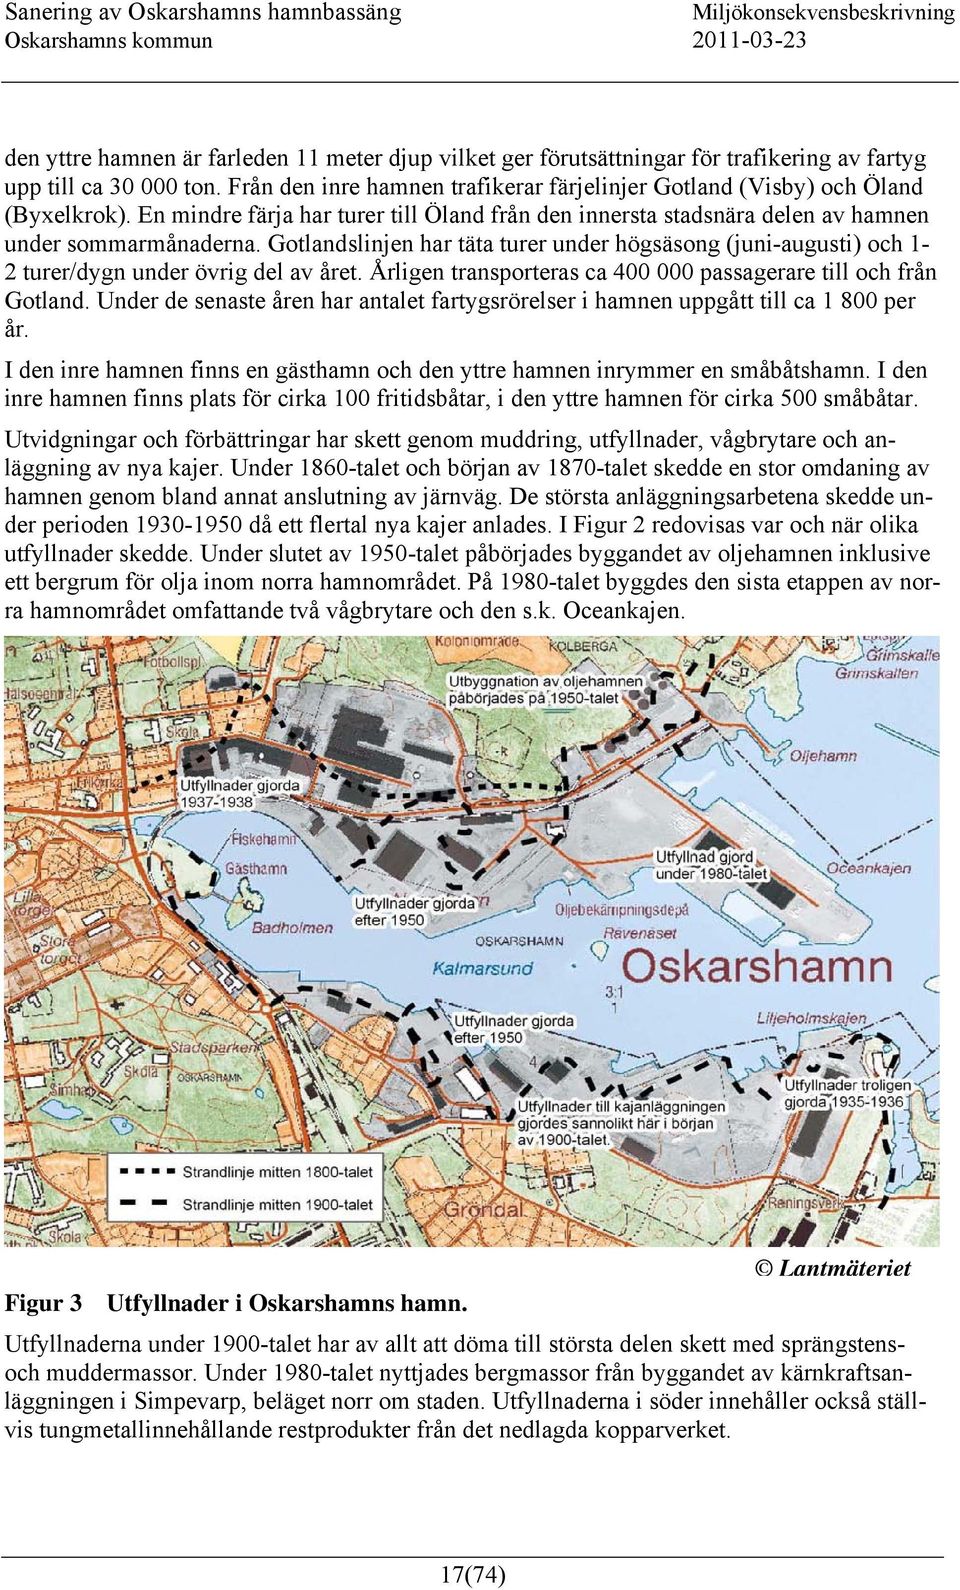 Gotlandslinjen har täta turer under högsäsong (juni-augusti) och 1-2 turer/dygn under övrig del av året. Årligen transporteras ca 400 000 passagerare till och från Gotland.